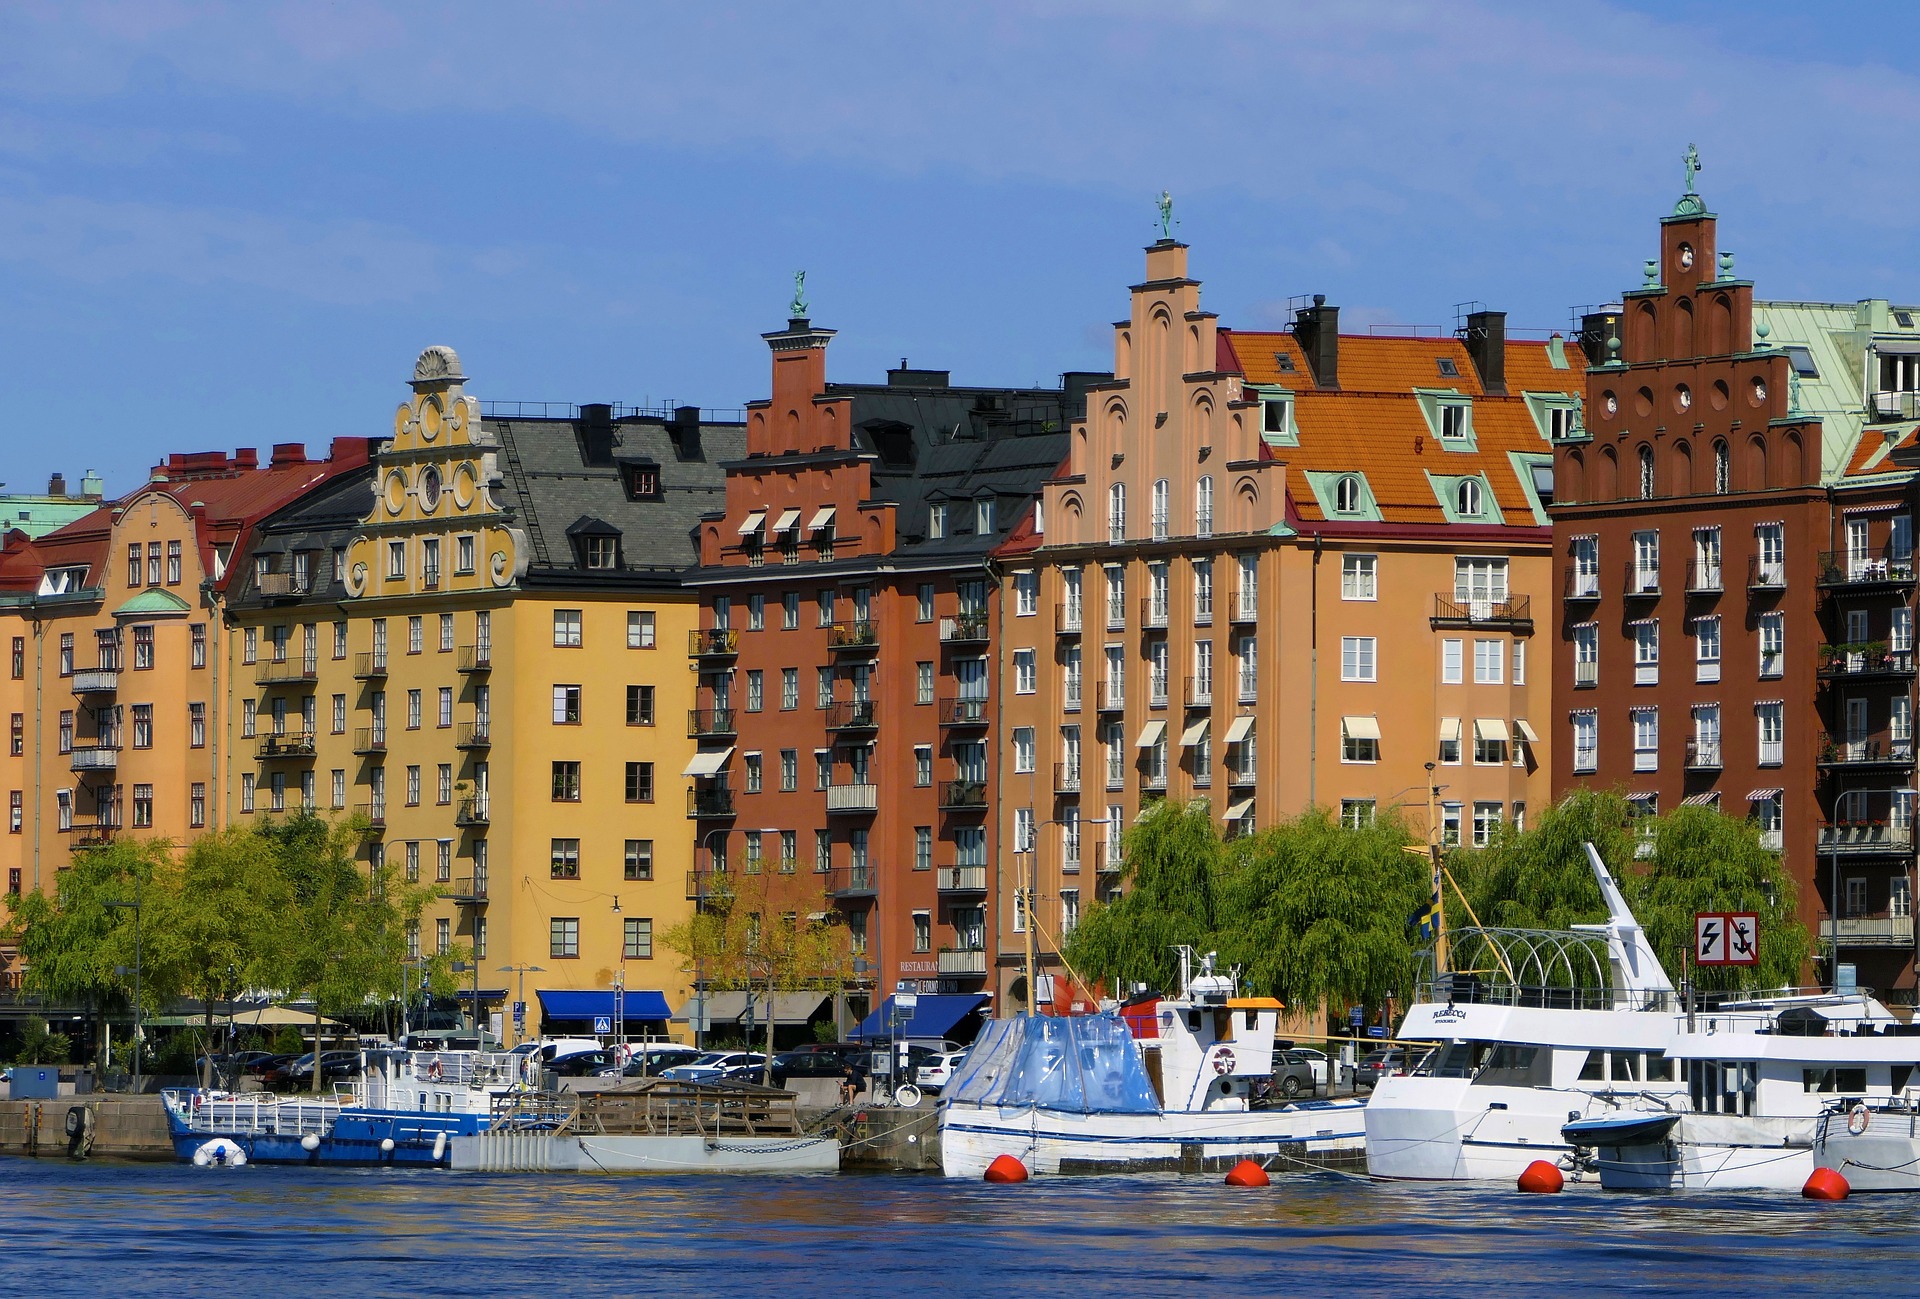 Σουηδία: Από το κακό στο χειρότερο η οικονομία, πρόβλεψη για απότομη συρρίκνωση του ΑΕΠ